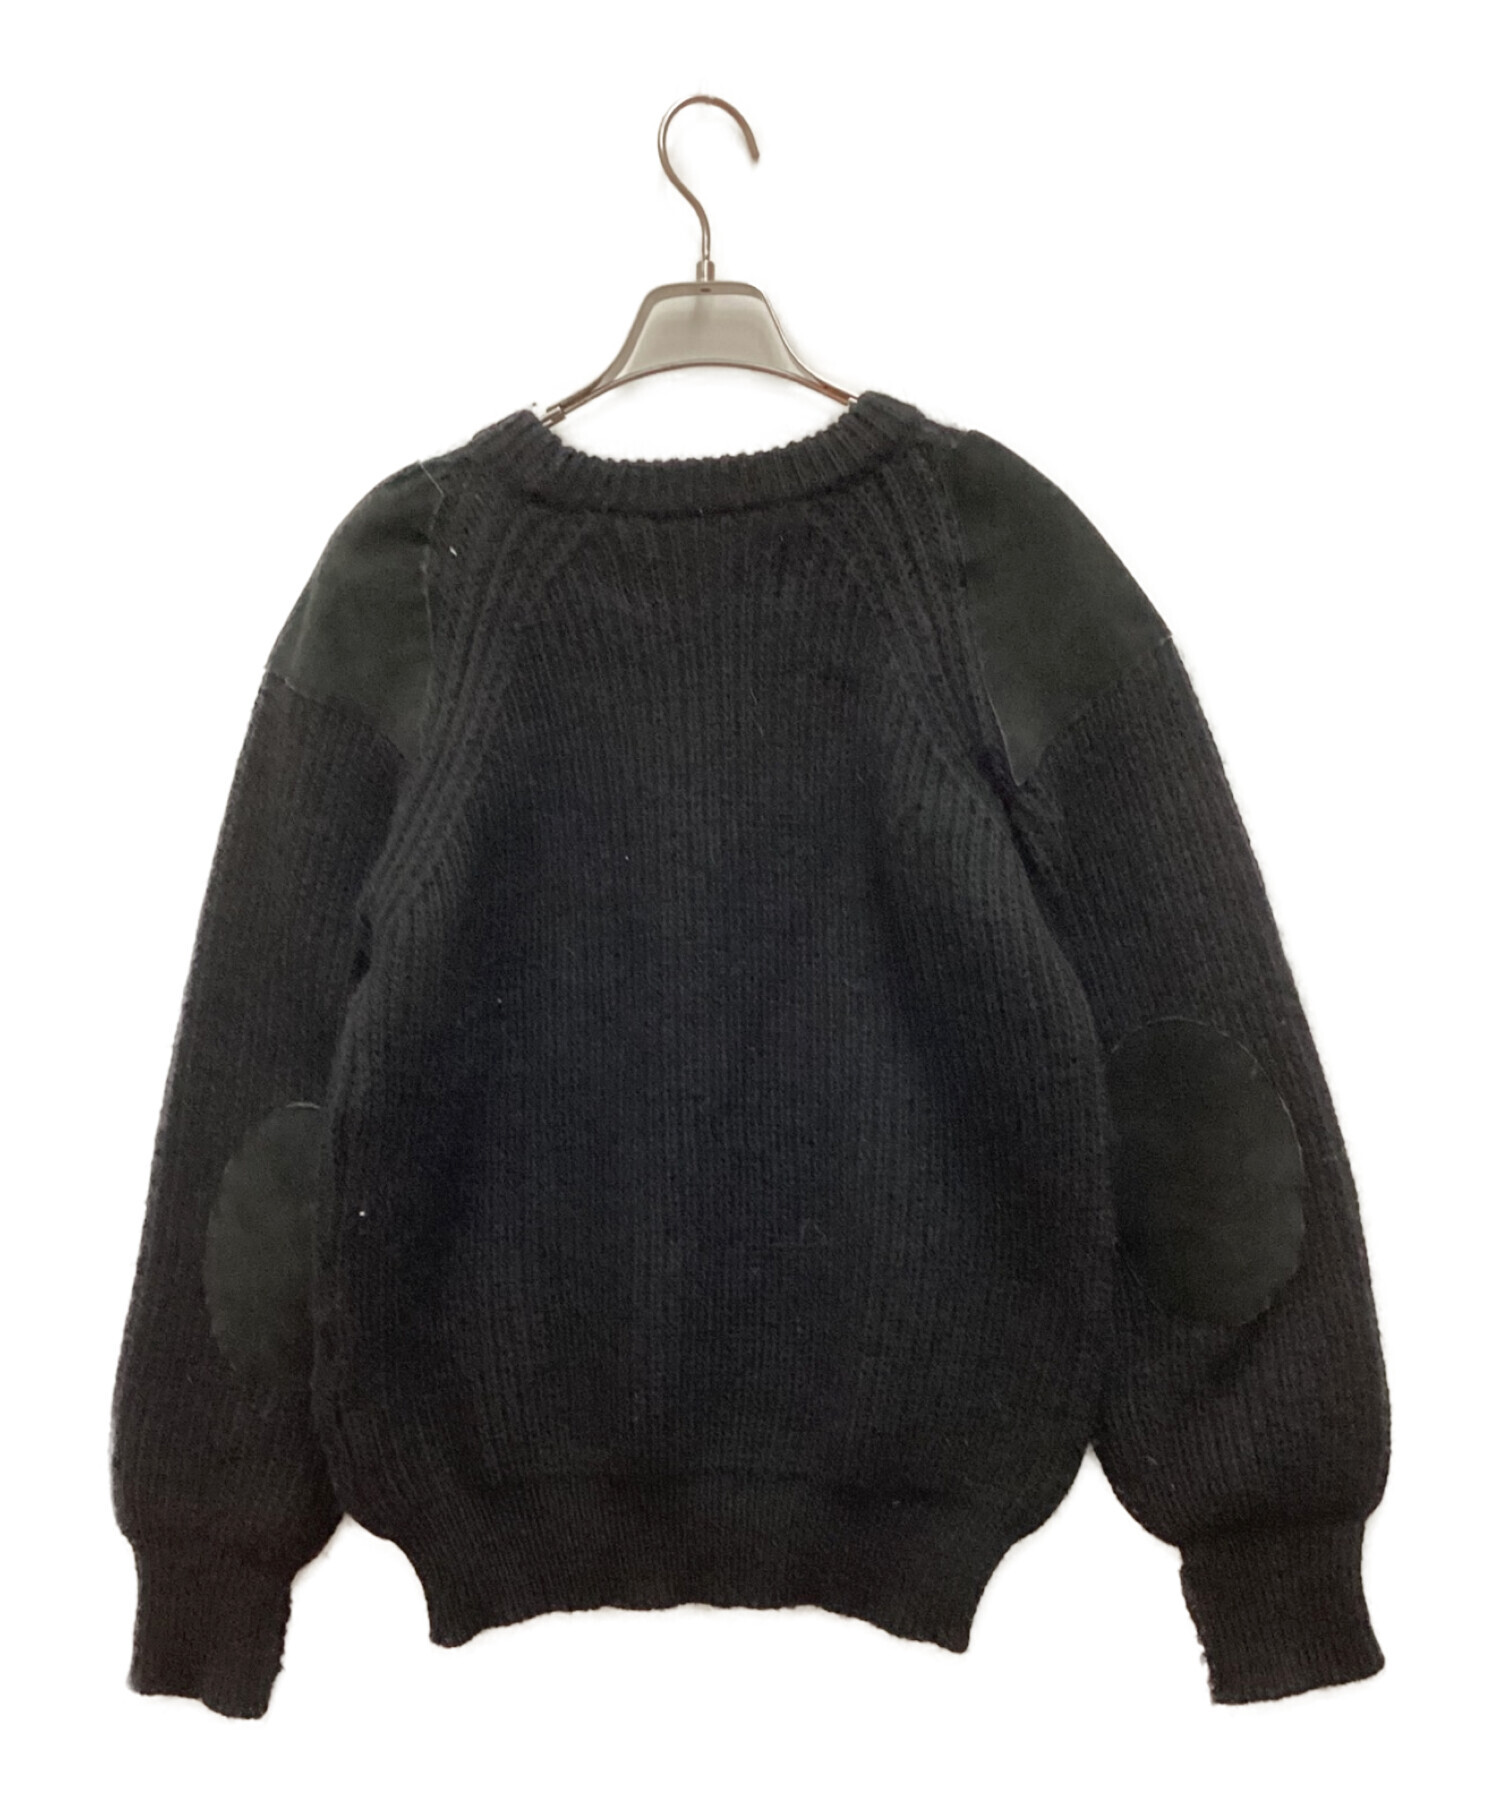 oldderby Knitwear (オールドダービーニットウェア) スウェードパッチニット ブラック サイズ:S